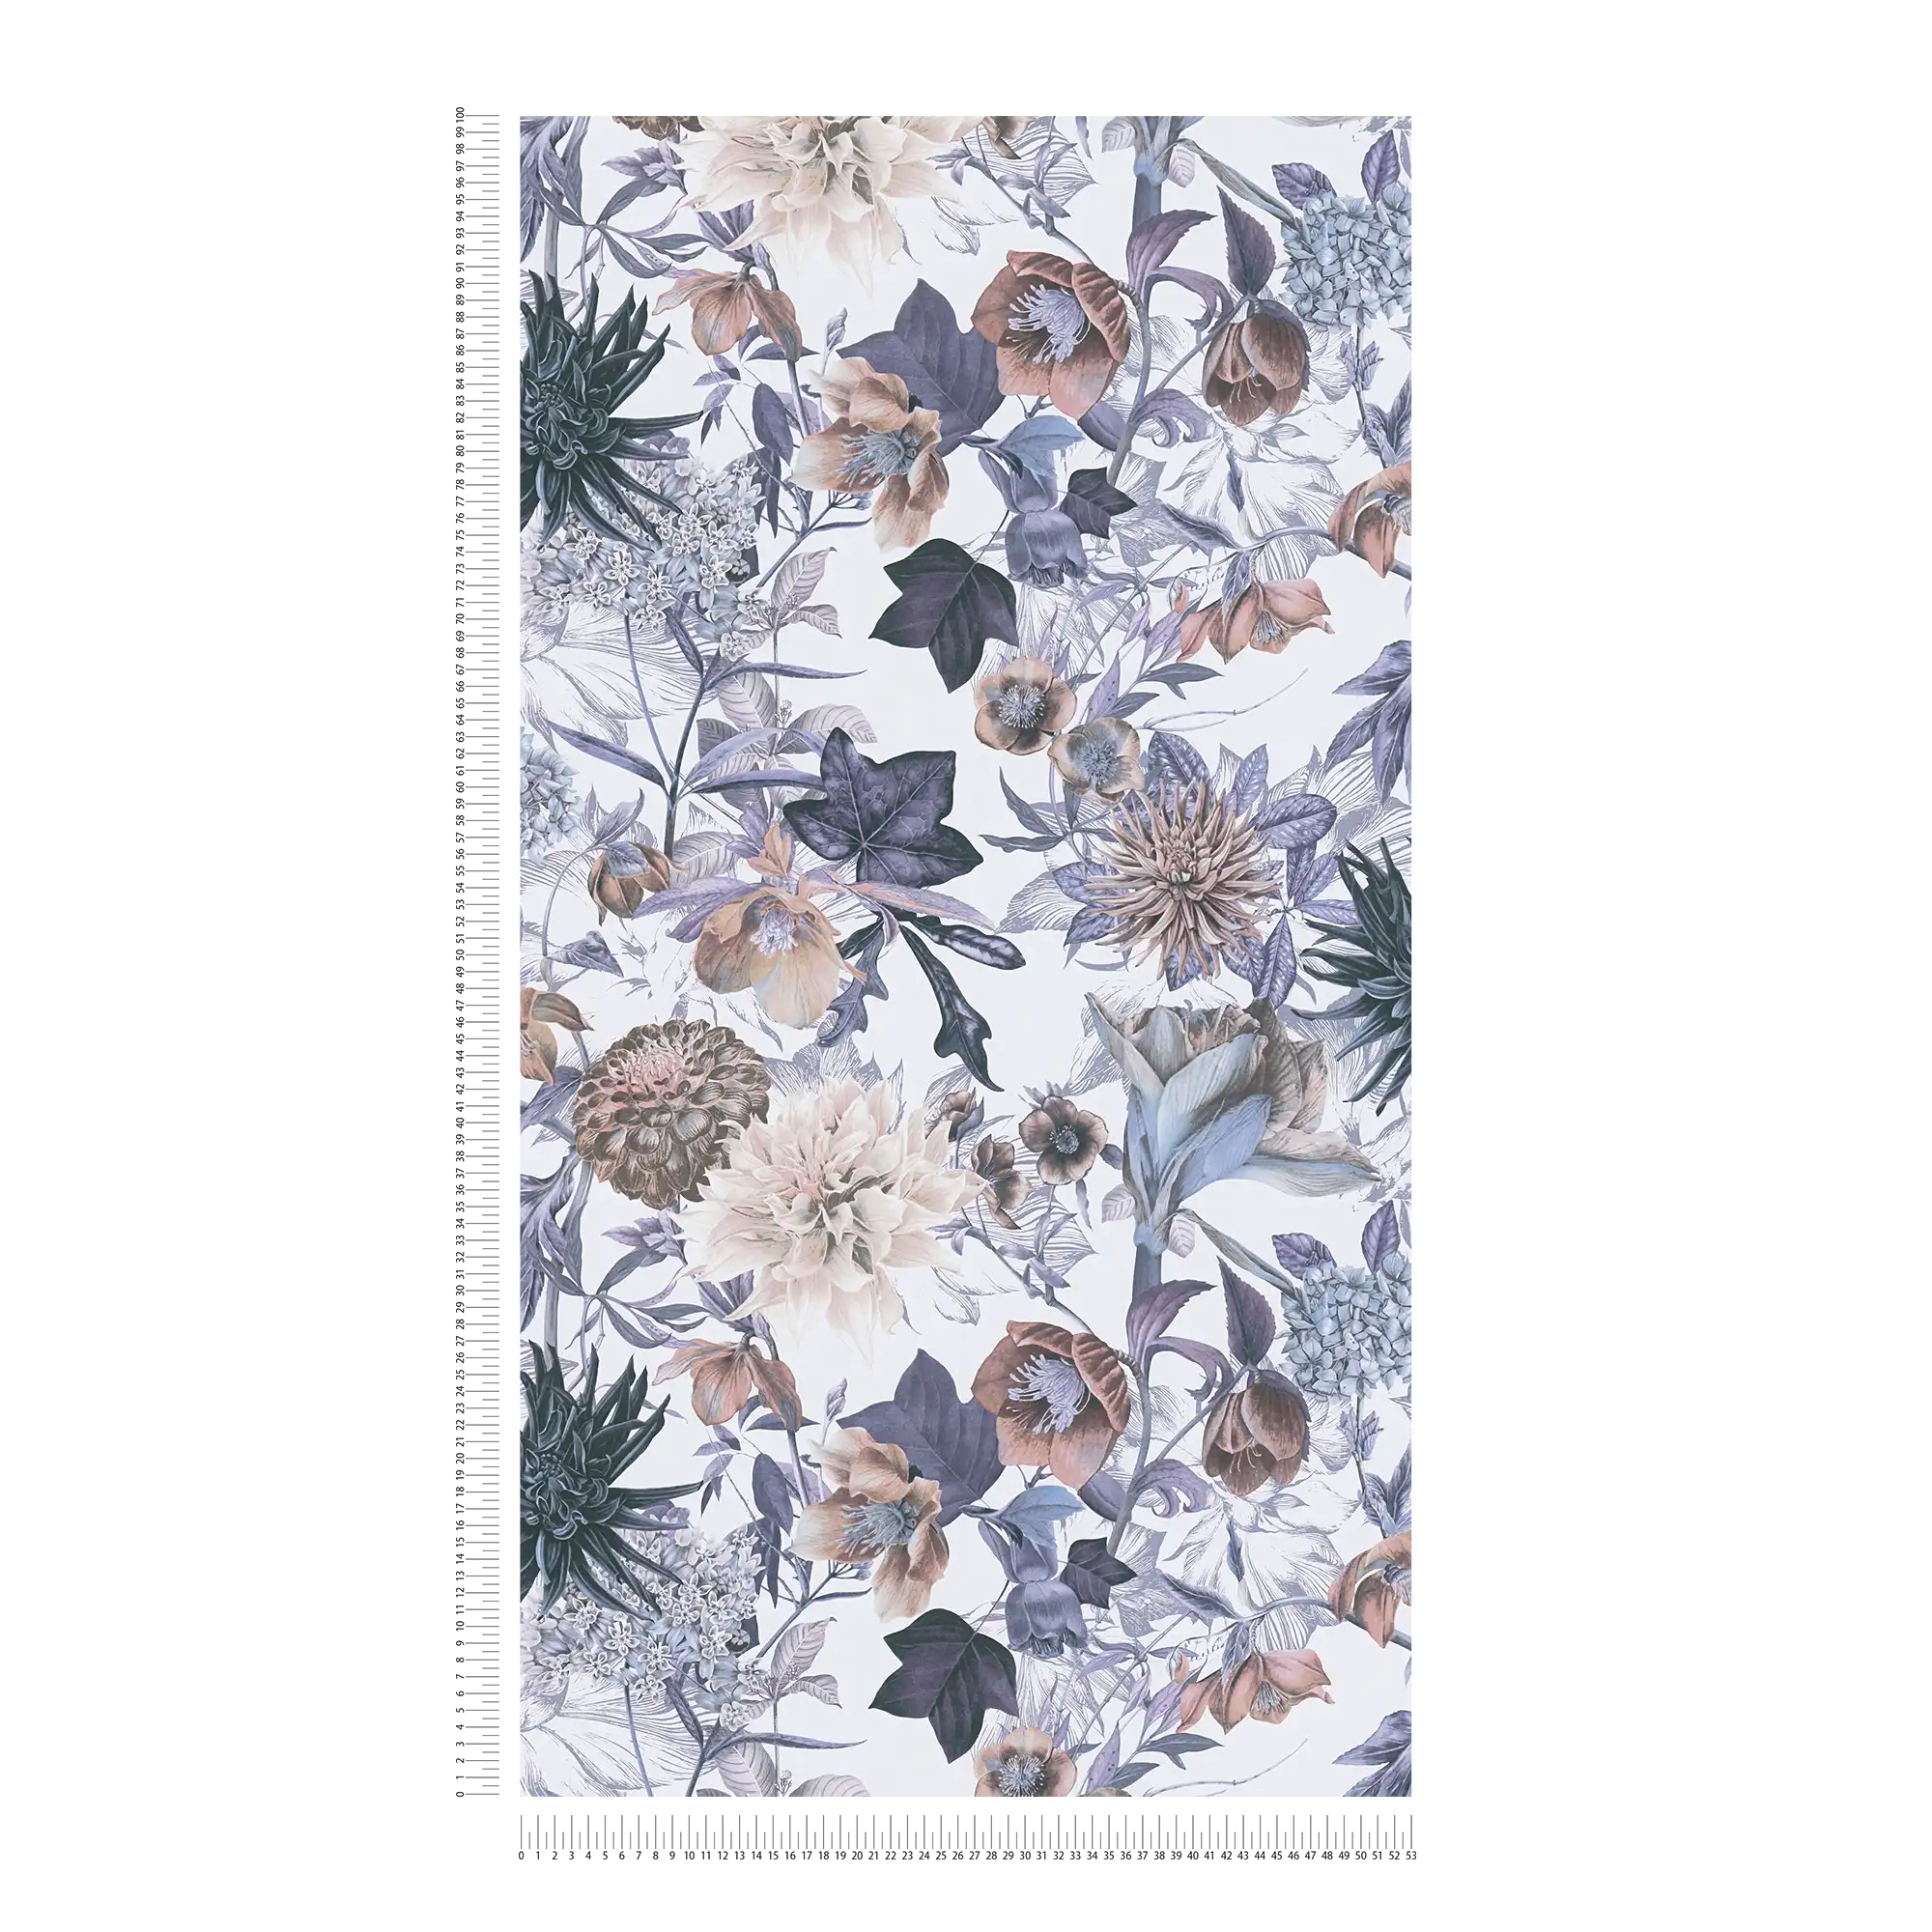             Papier peint à motifs floraux - bleu, marron, gris
        